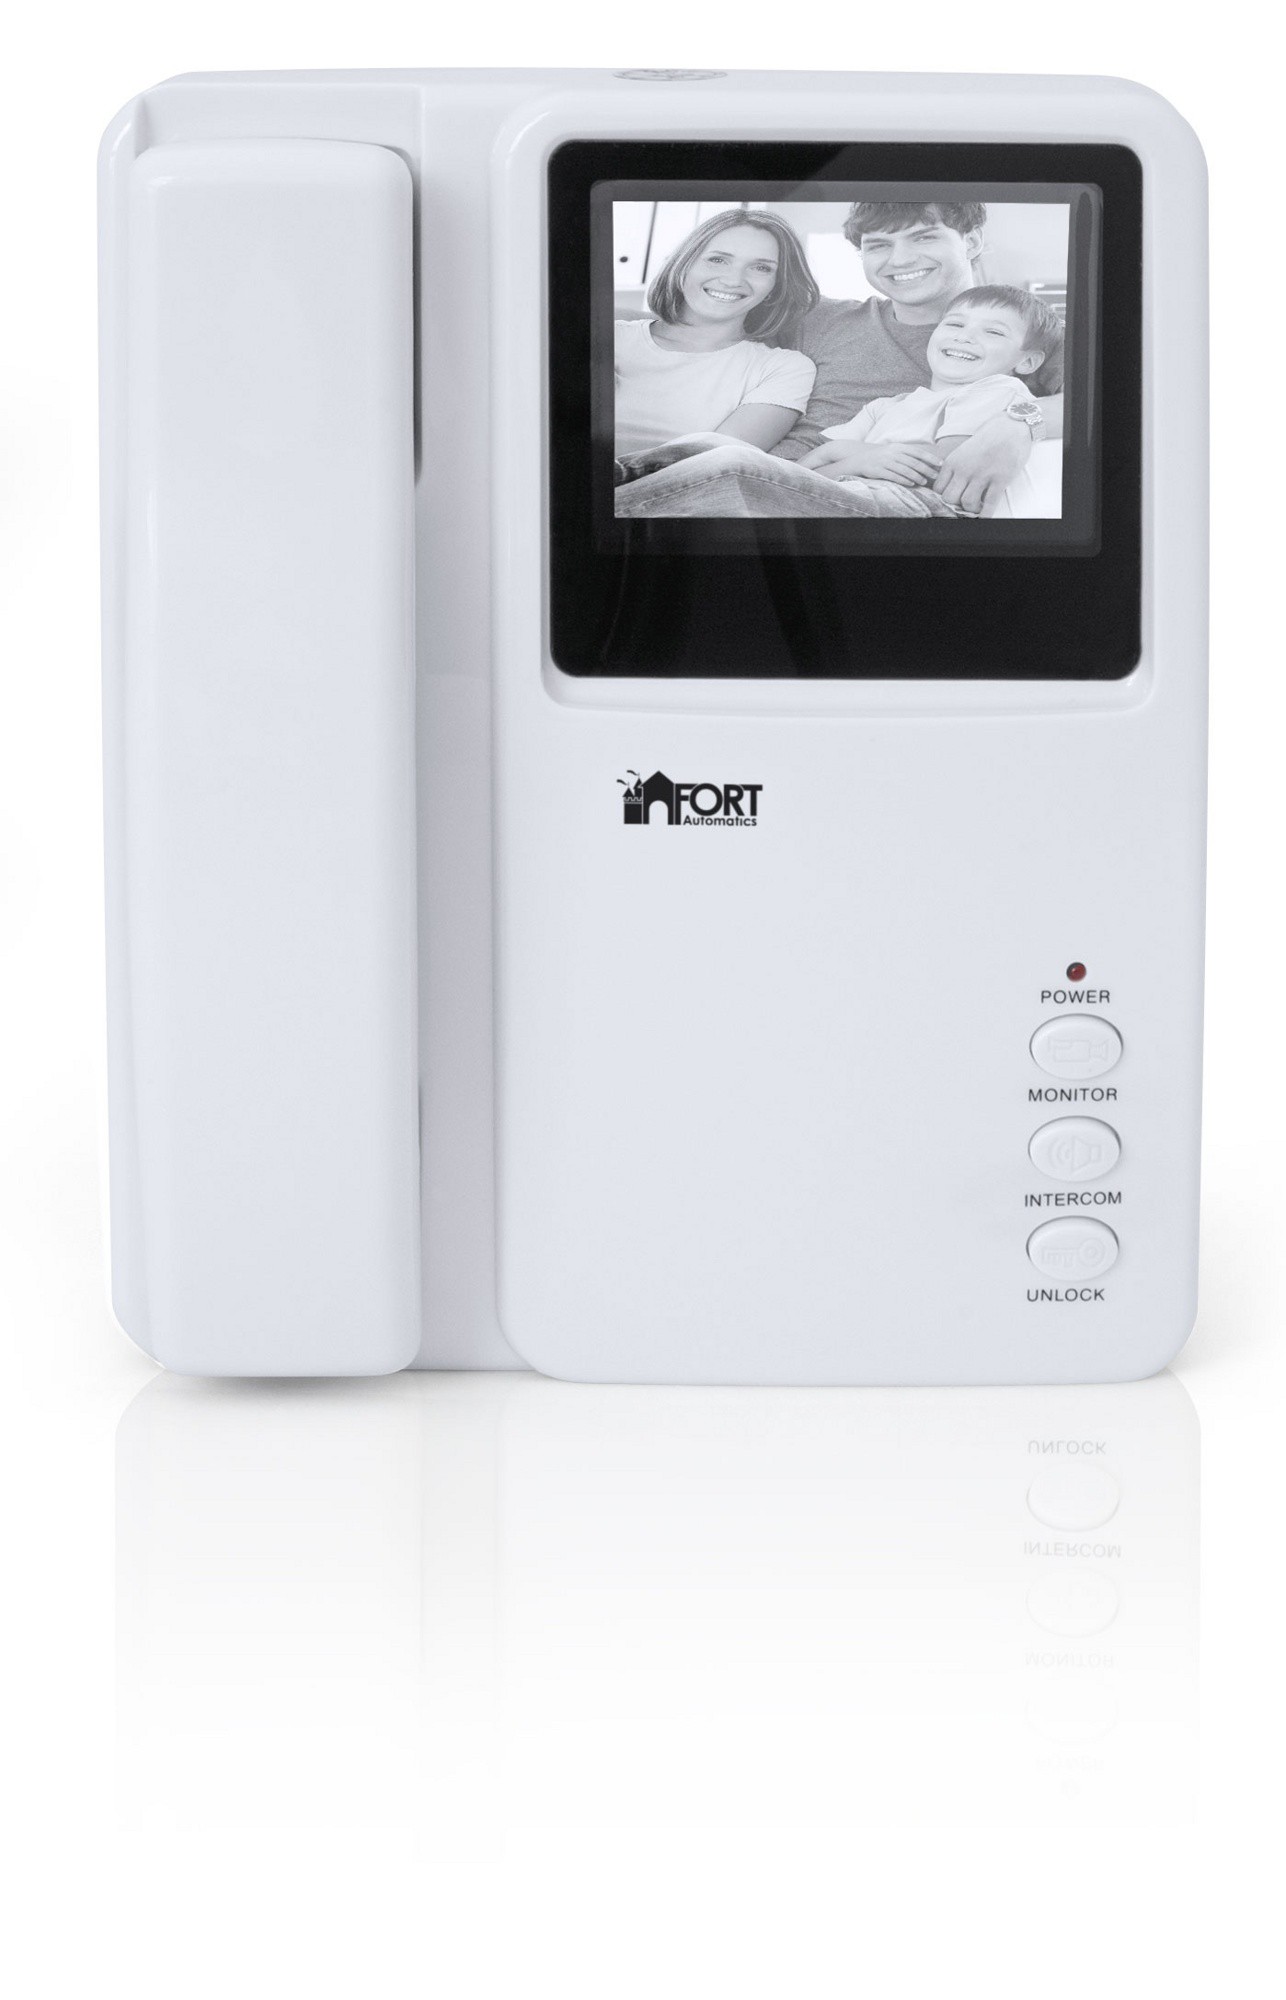 Видеодомофон FORT Automatics С0401 4" черно-белый экран, вызывная панель